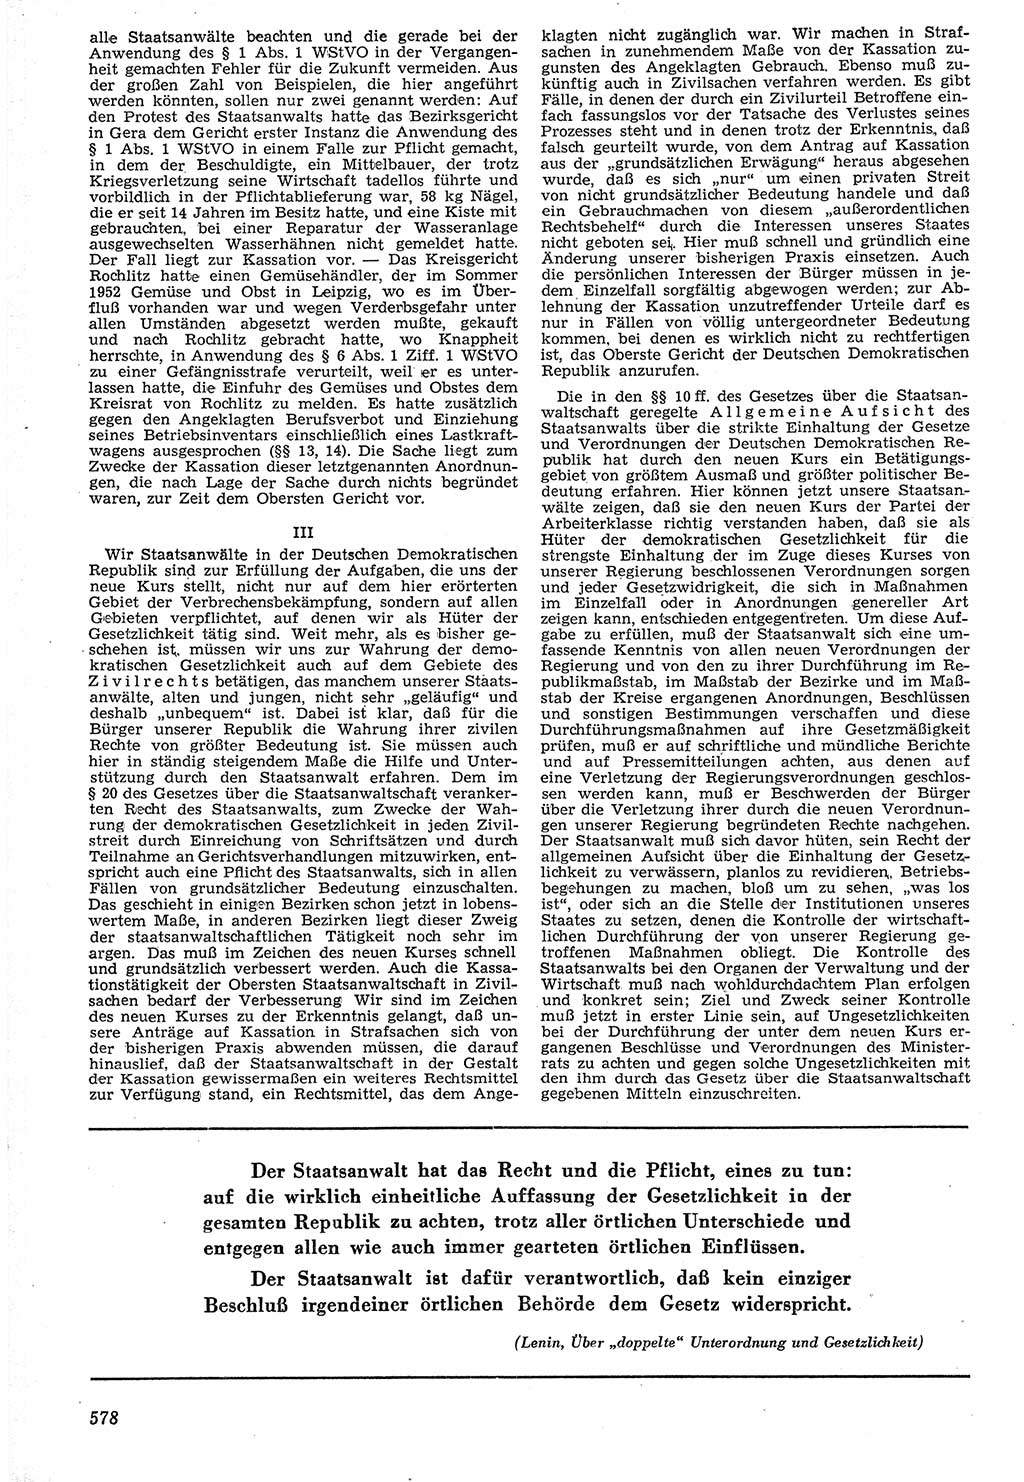 Neue Justiz (NJ), Zeitschrift für Recht und Rechtswissenschaft [Deutsche Demokratische Republik (DDR)], 7. Jahrgang 1953, Seite 578 (NJ DDR 1953, S. 578)